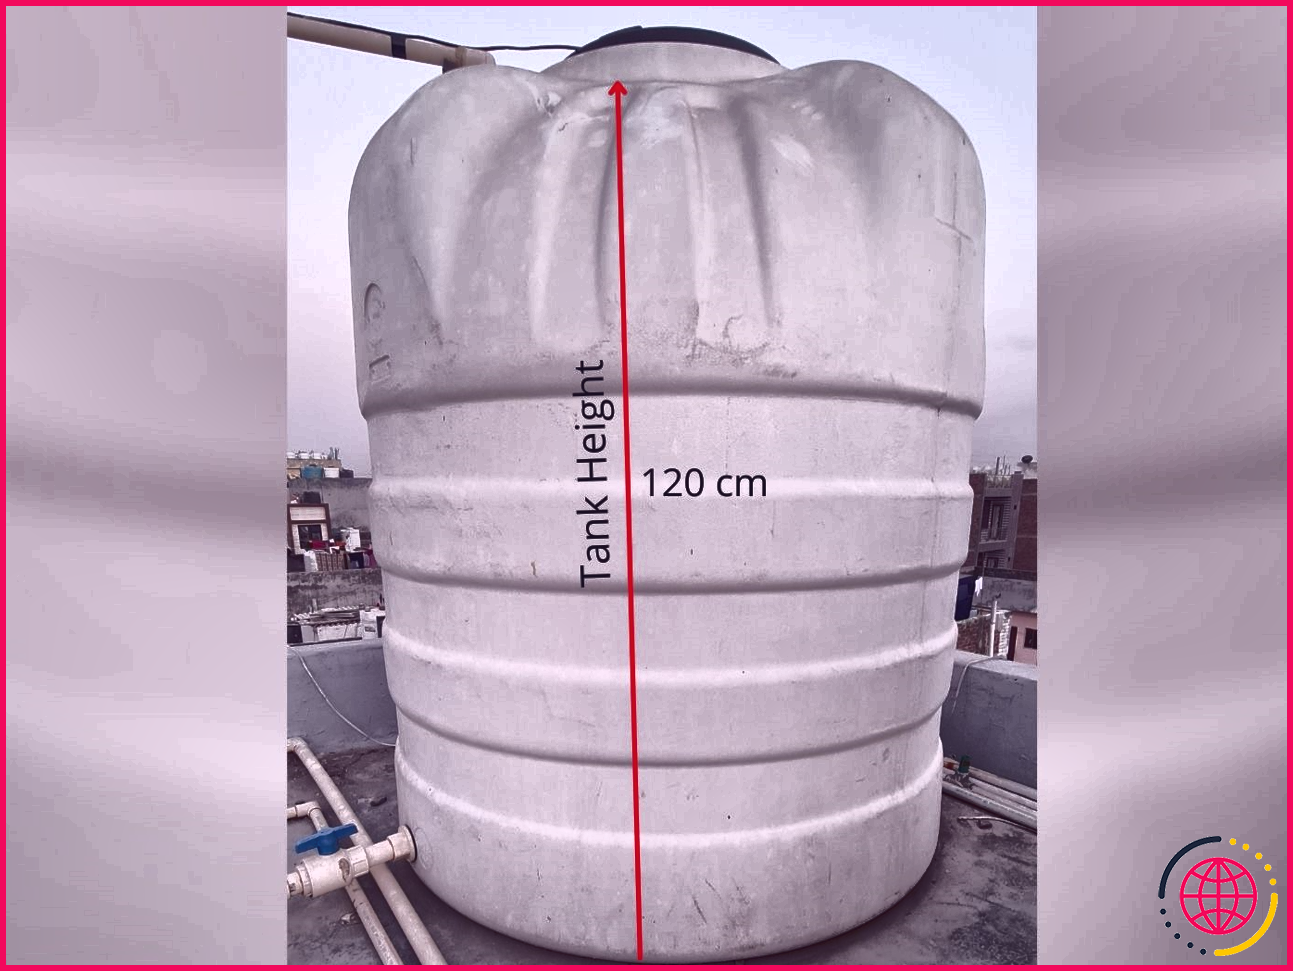 mesurer la hauteur du réservoir pour trouver la profondeur